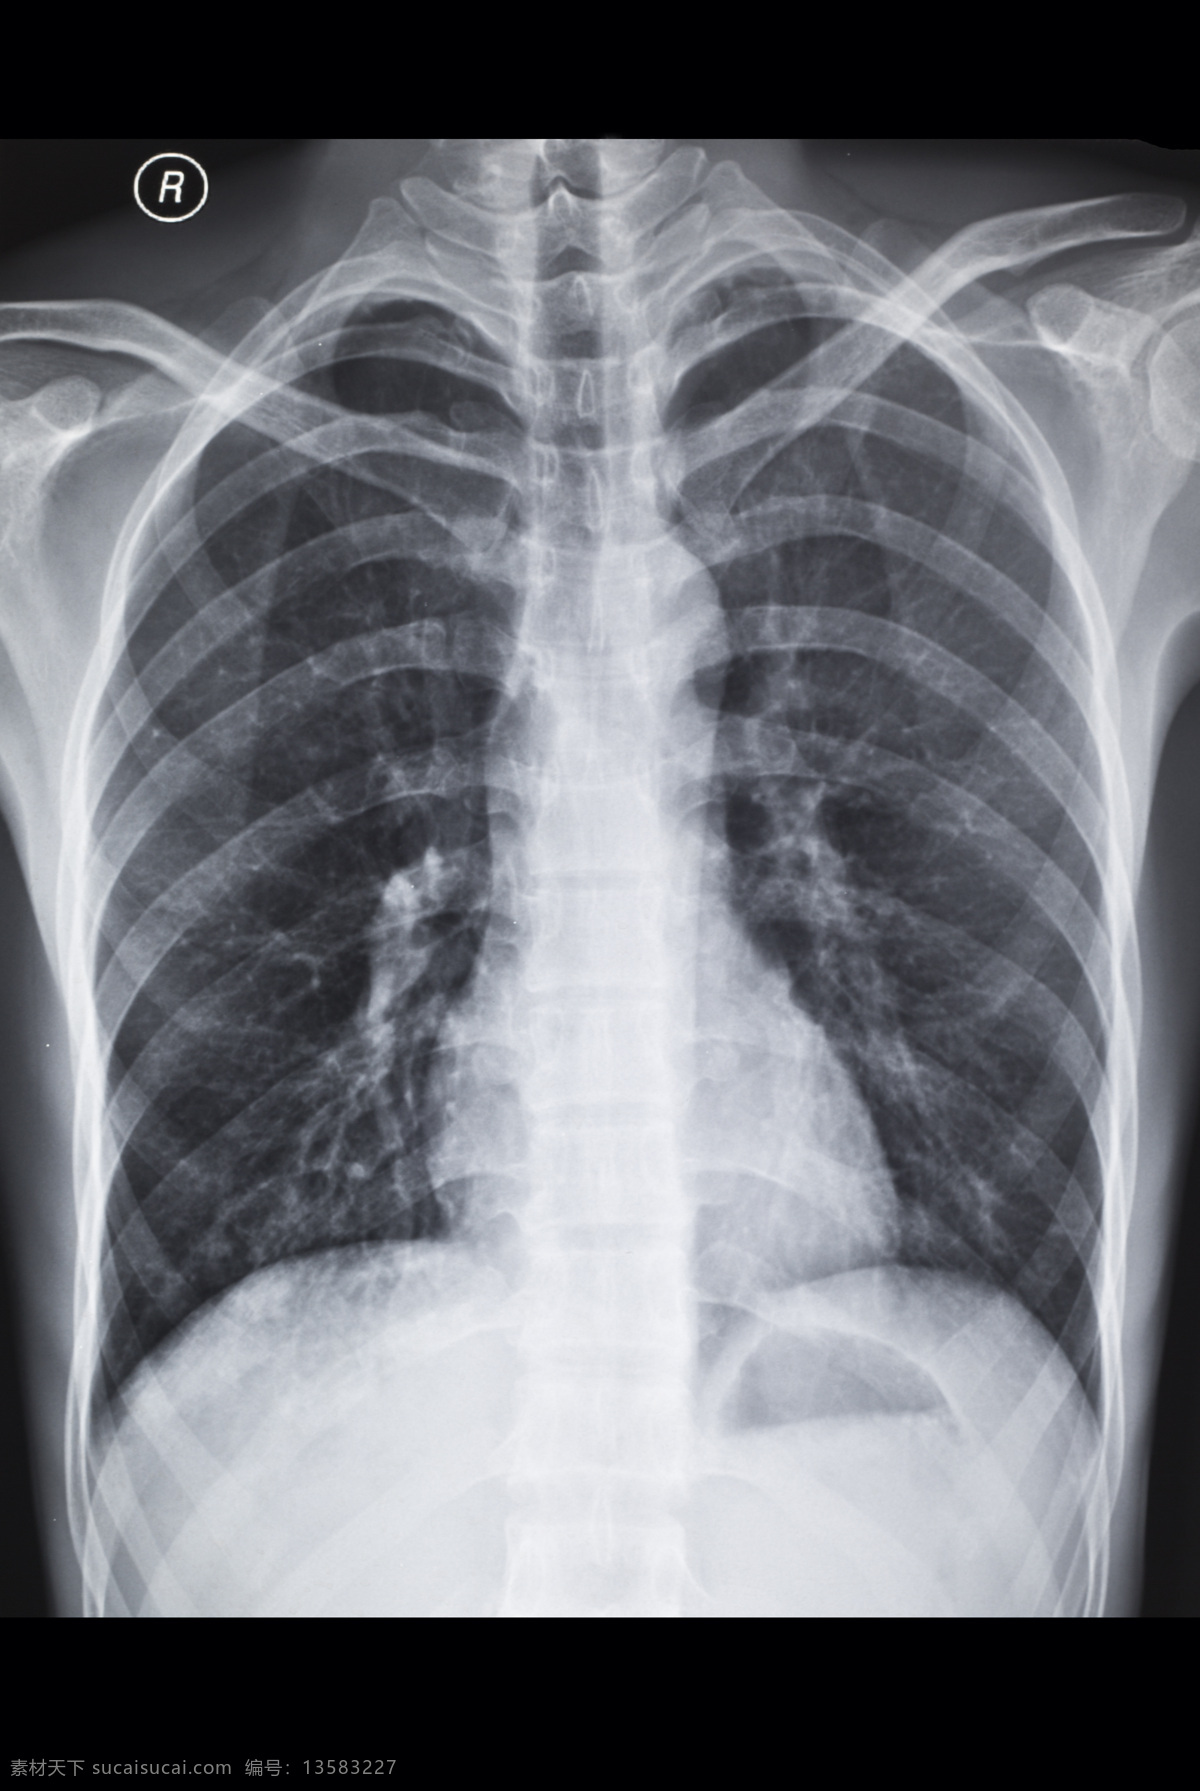 胸腔x光片 胸腔 胸部 x光 透视 医疗 ct x光片 核磁共振 医疗护理 现代科技